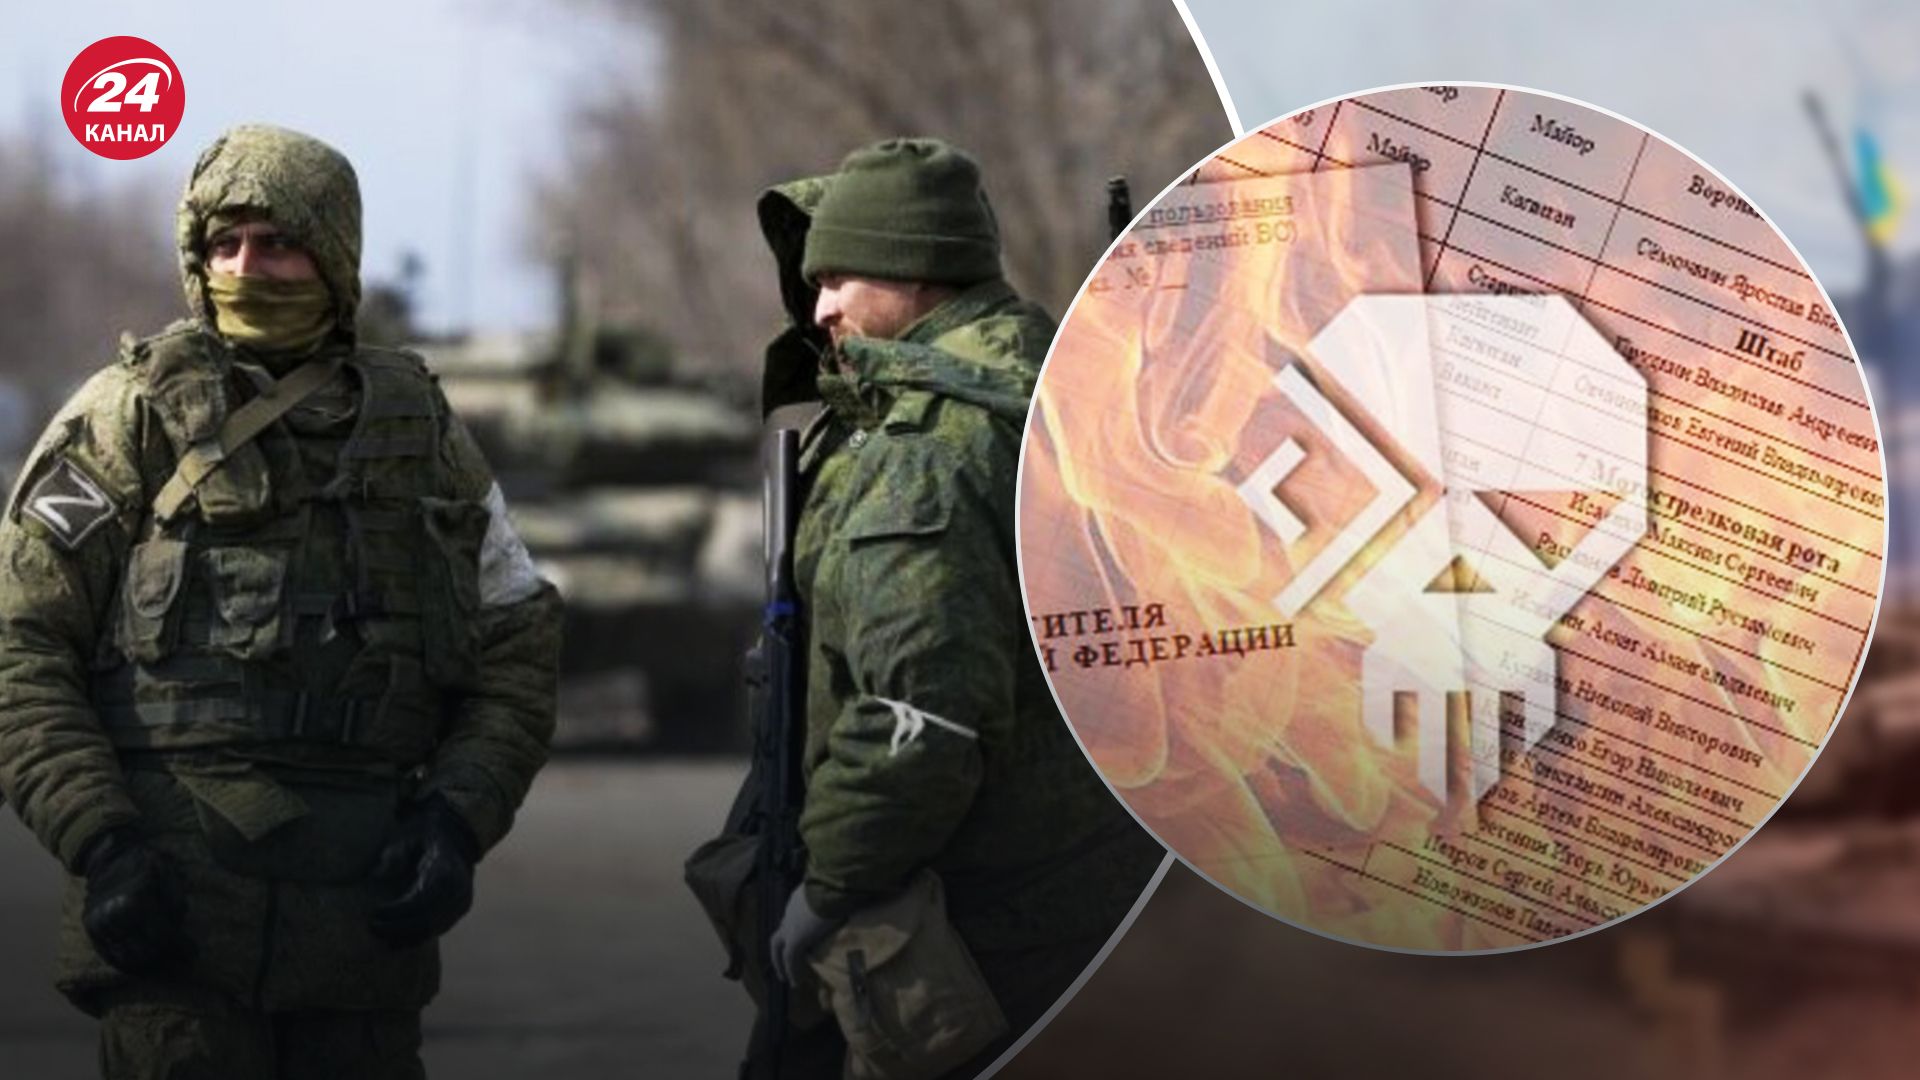 "Кибер Сопротивление" получили тайные документы российских военных